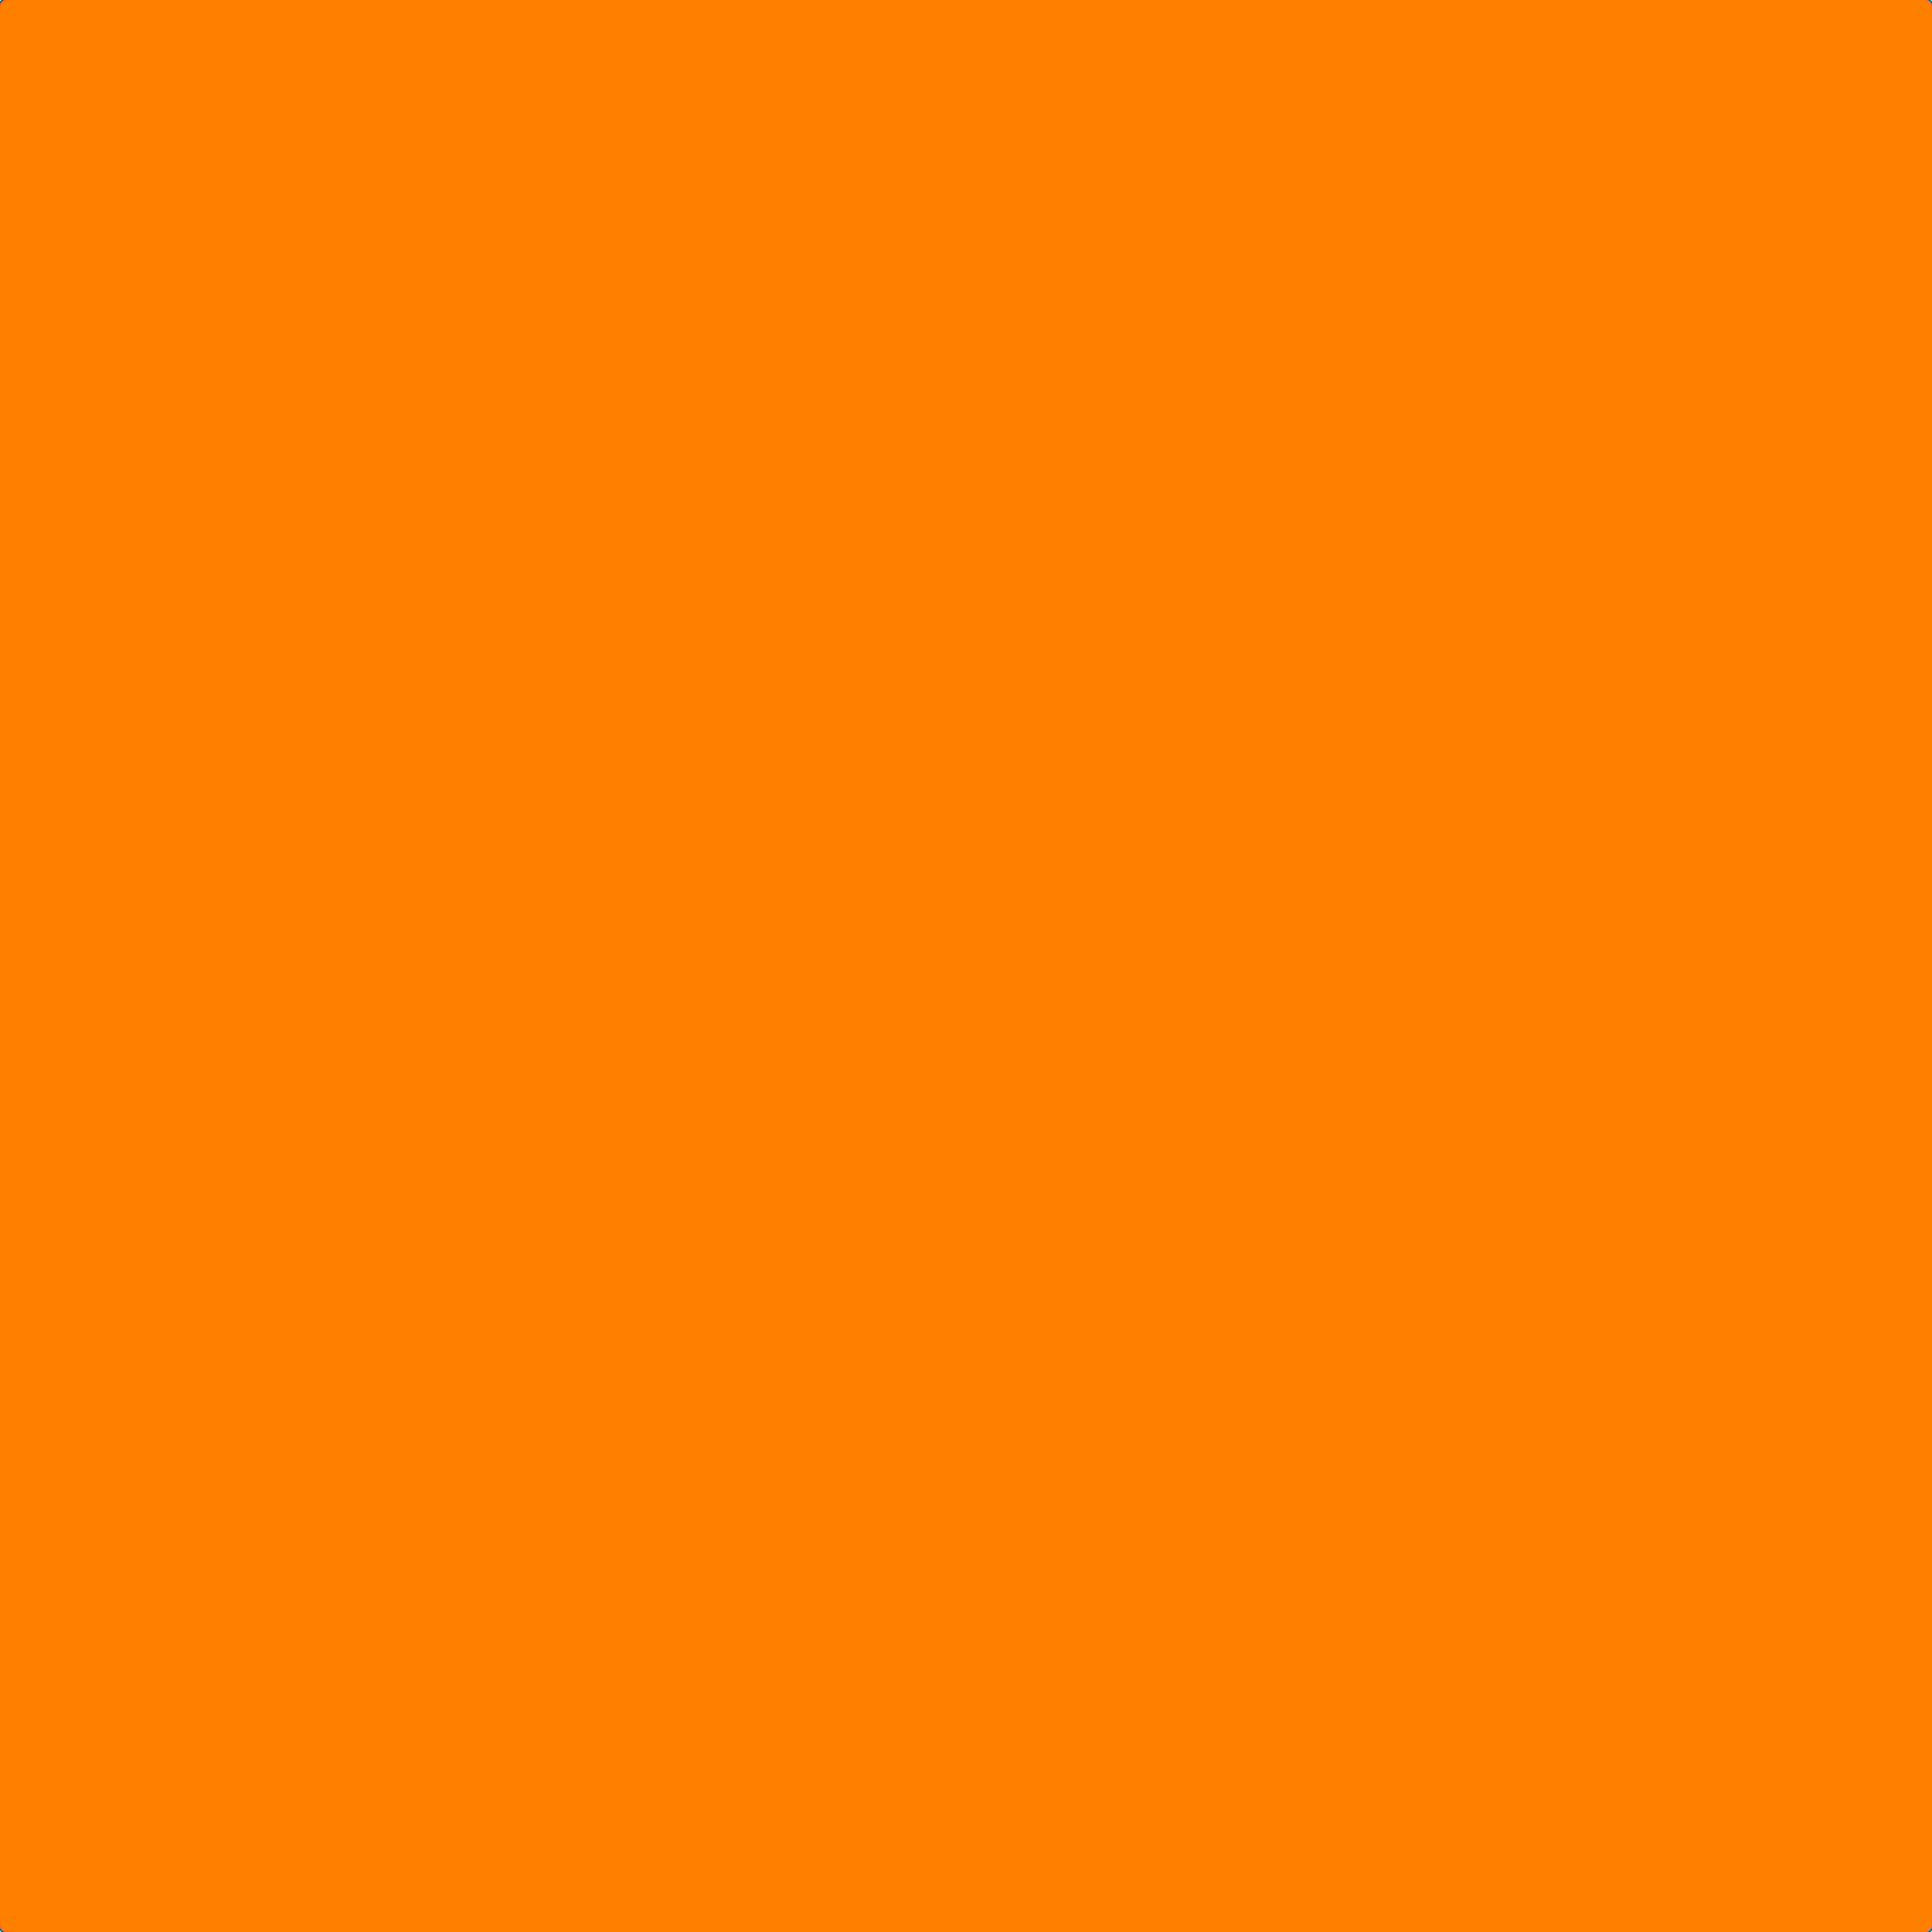 Thư viện ảnh màu cam neon [2048x2048] tải miễn phí là một nguồn tài nguyên tuyệt vời để sáng tạo nên những hình ảnh ấn tượng và sáng tạo. Với độ phân giải cao, các hình ảnh màu cam neon sẽ mang đến cho bạn sự độc đáo và nổi bật. Hãy tải về và sử dụng ảnh liên quan để trang trí màn hình của bạn!